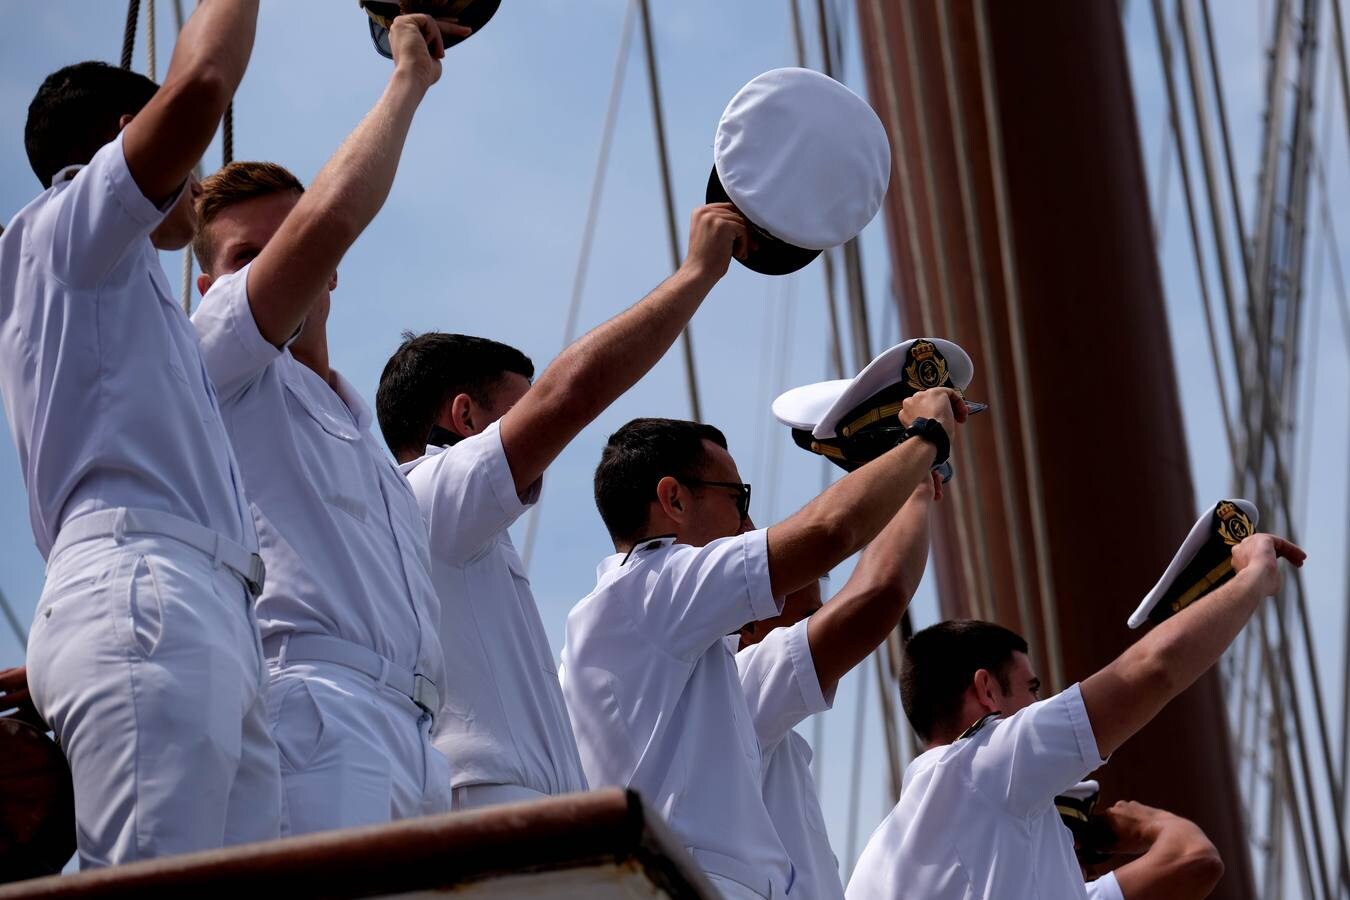 FOTOS: El Juan Sebastián de Elcano arriba en Marín en el 91 crucero de instrucción